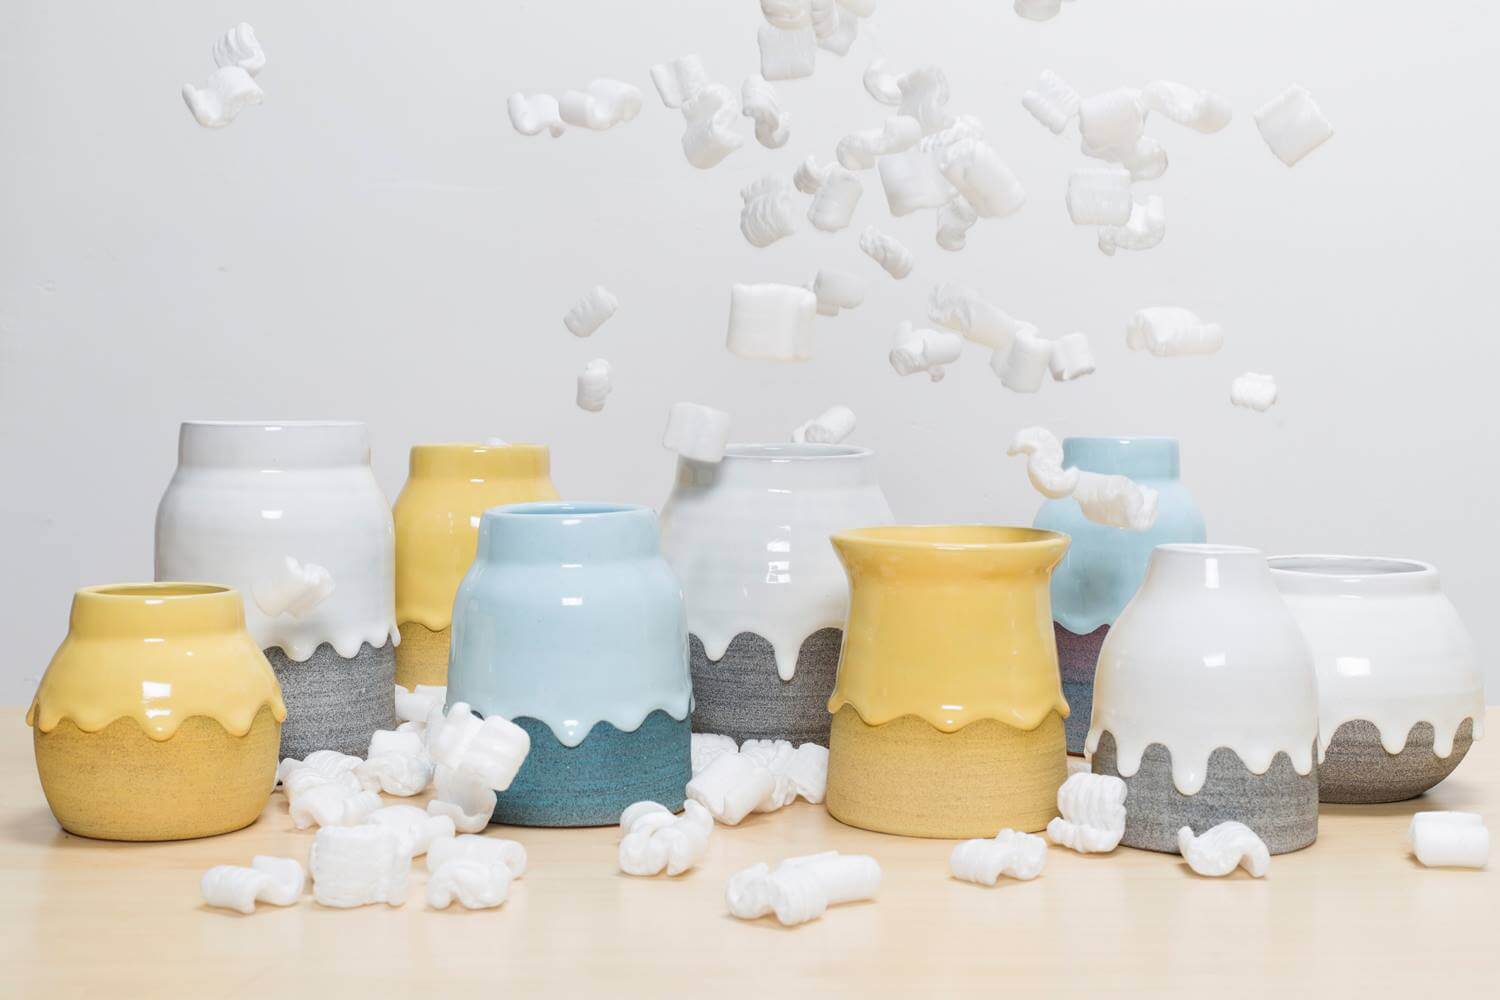 Keramikár vytvára vázy dúhových farieb po ktorých steká hustá glazúra - 15385497 10211303740537562 4088217607872655688 o - Keramikár vytvára vázy dúhových farieb po ktorých steká hustá glazúra